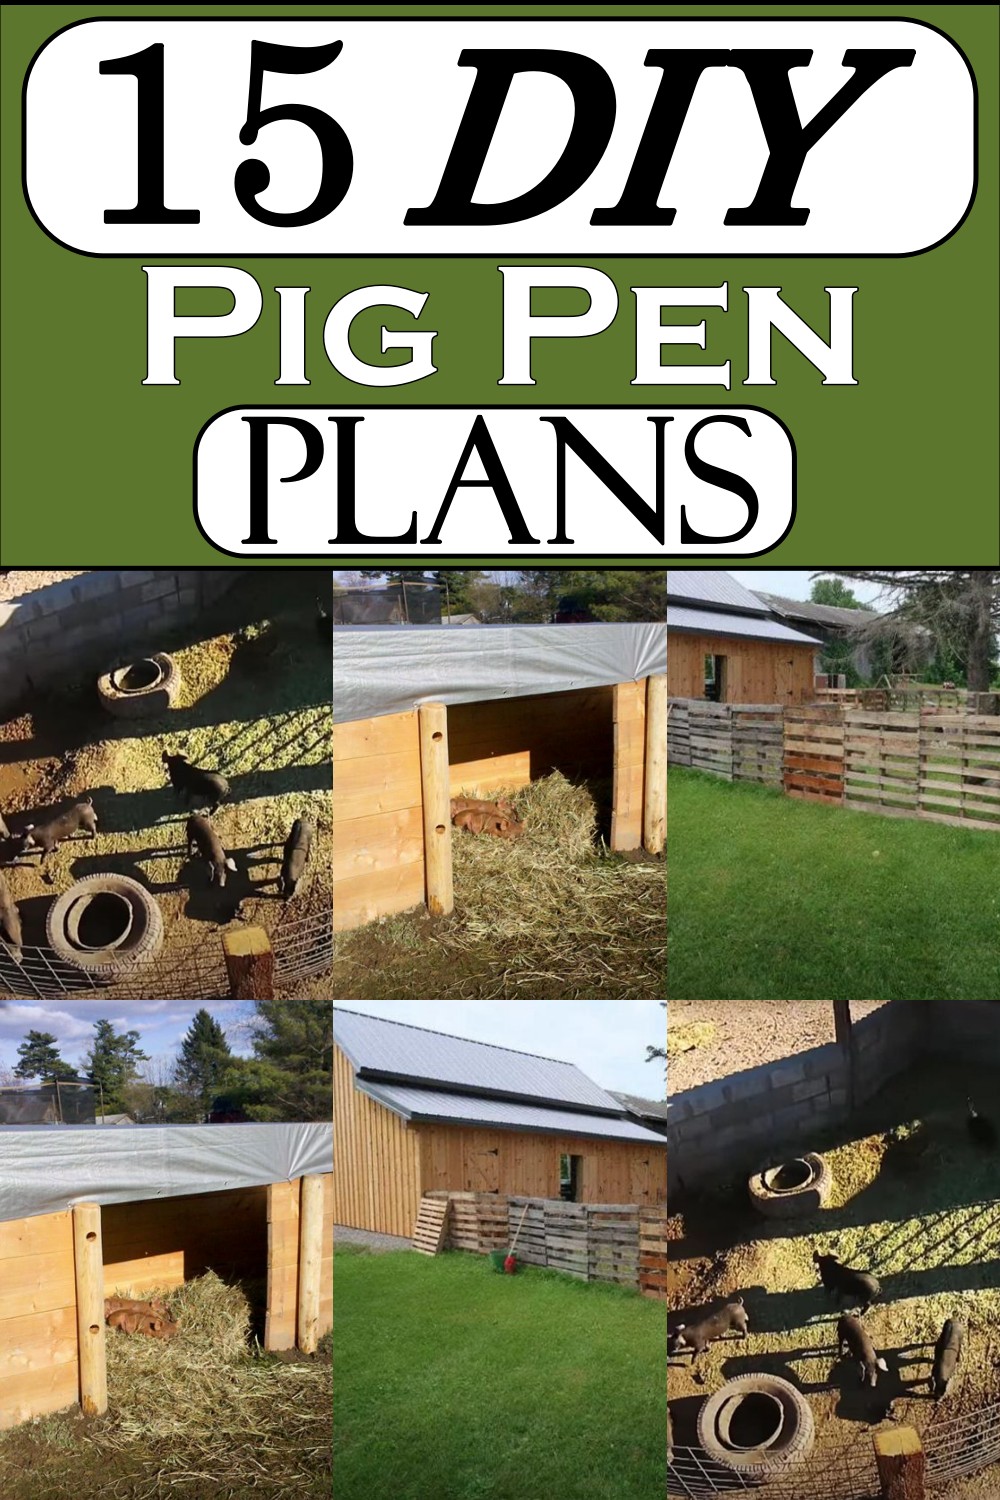 DIY Pig Pen Plans